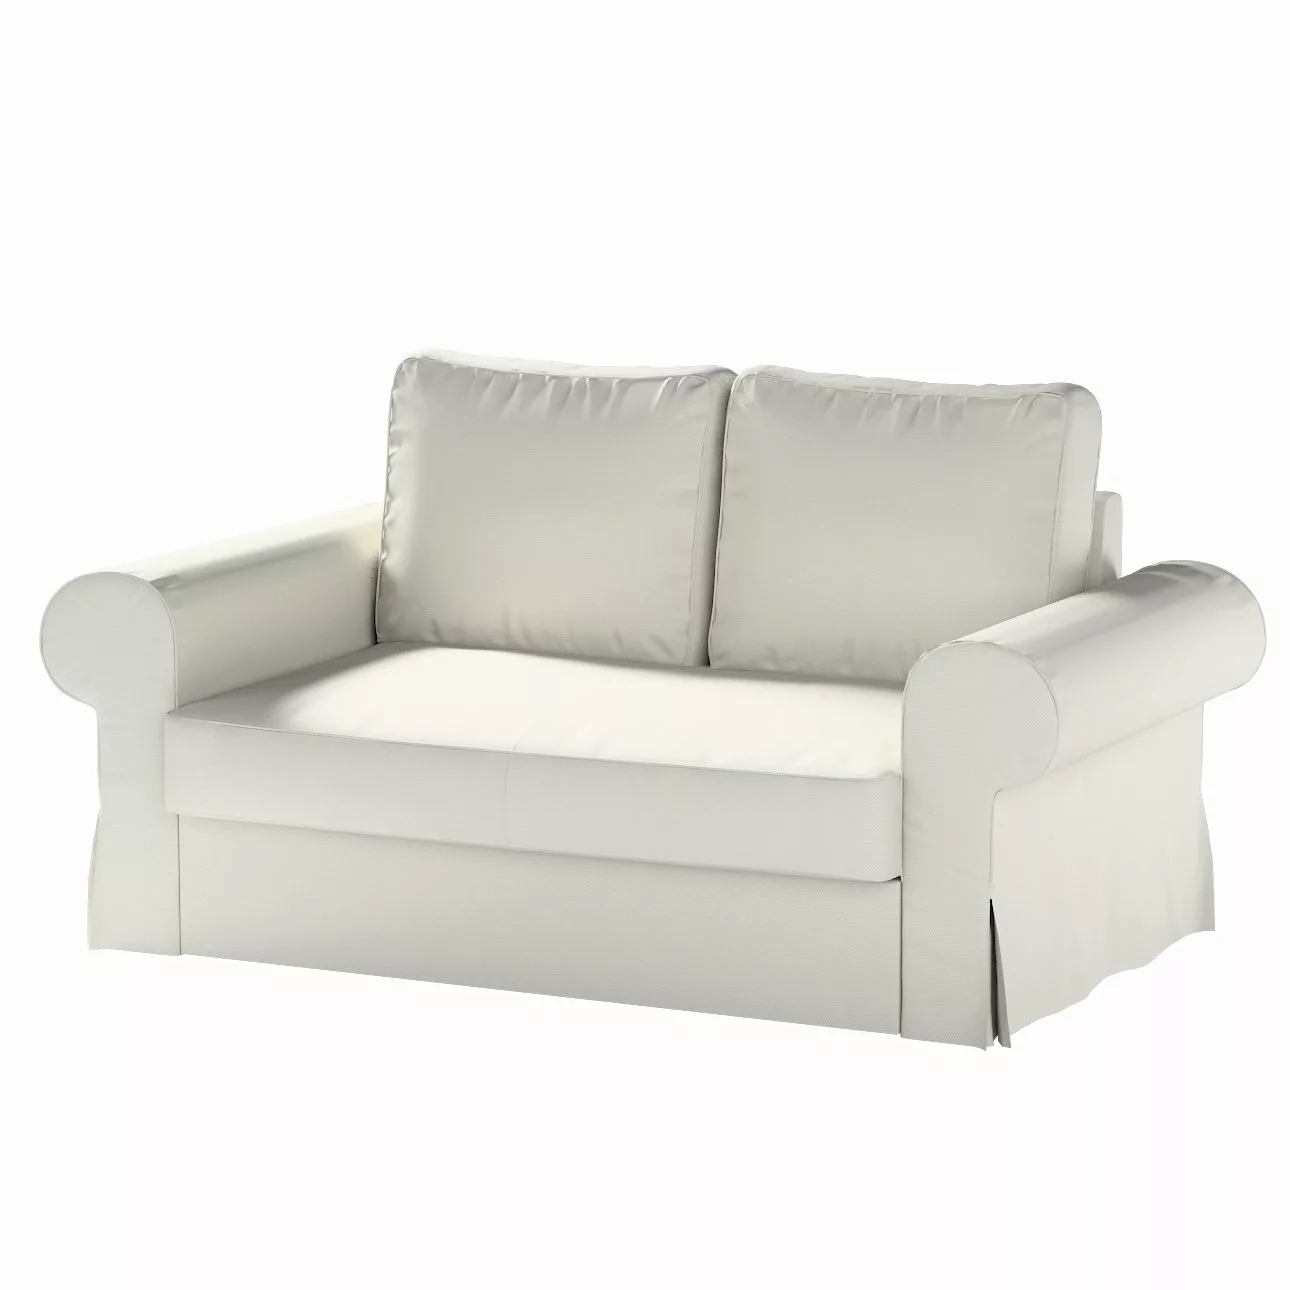 Bezug für Backabro 2-Sitzer Sofa ausklappbar, hellgrau, Bezug für Backabro günstig online kaufen